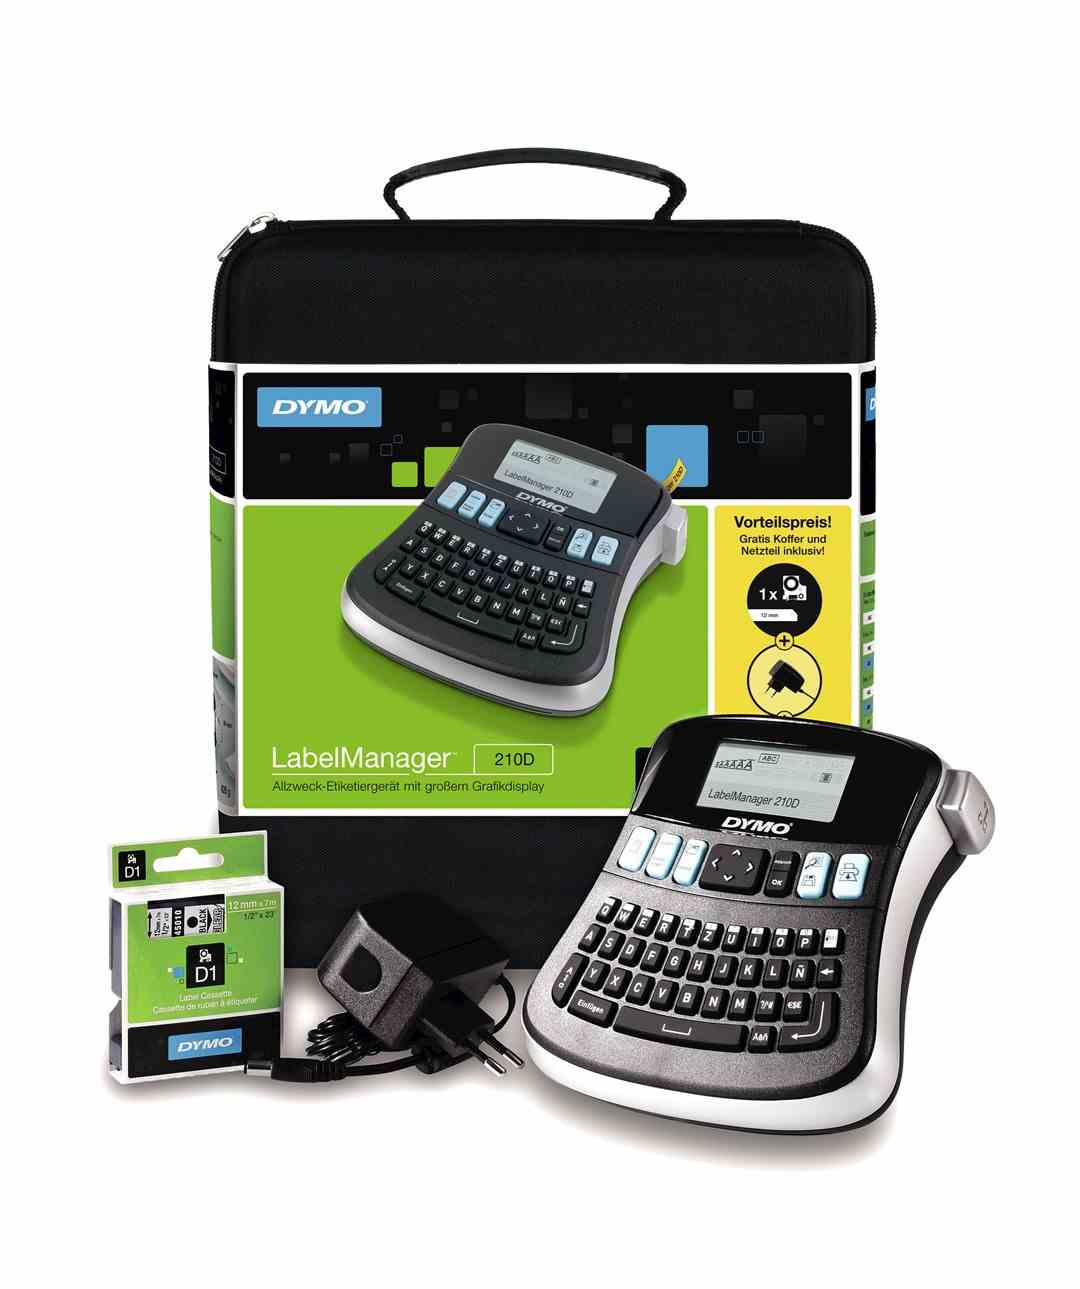 DYMO LabelManager 210D zestaw z ręczną drukarką etykiet, z klawiaturą QWERTY, etykietami D1 12 mm (czarne na białym) i walizką